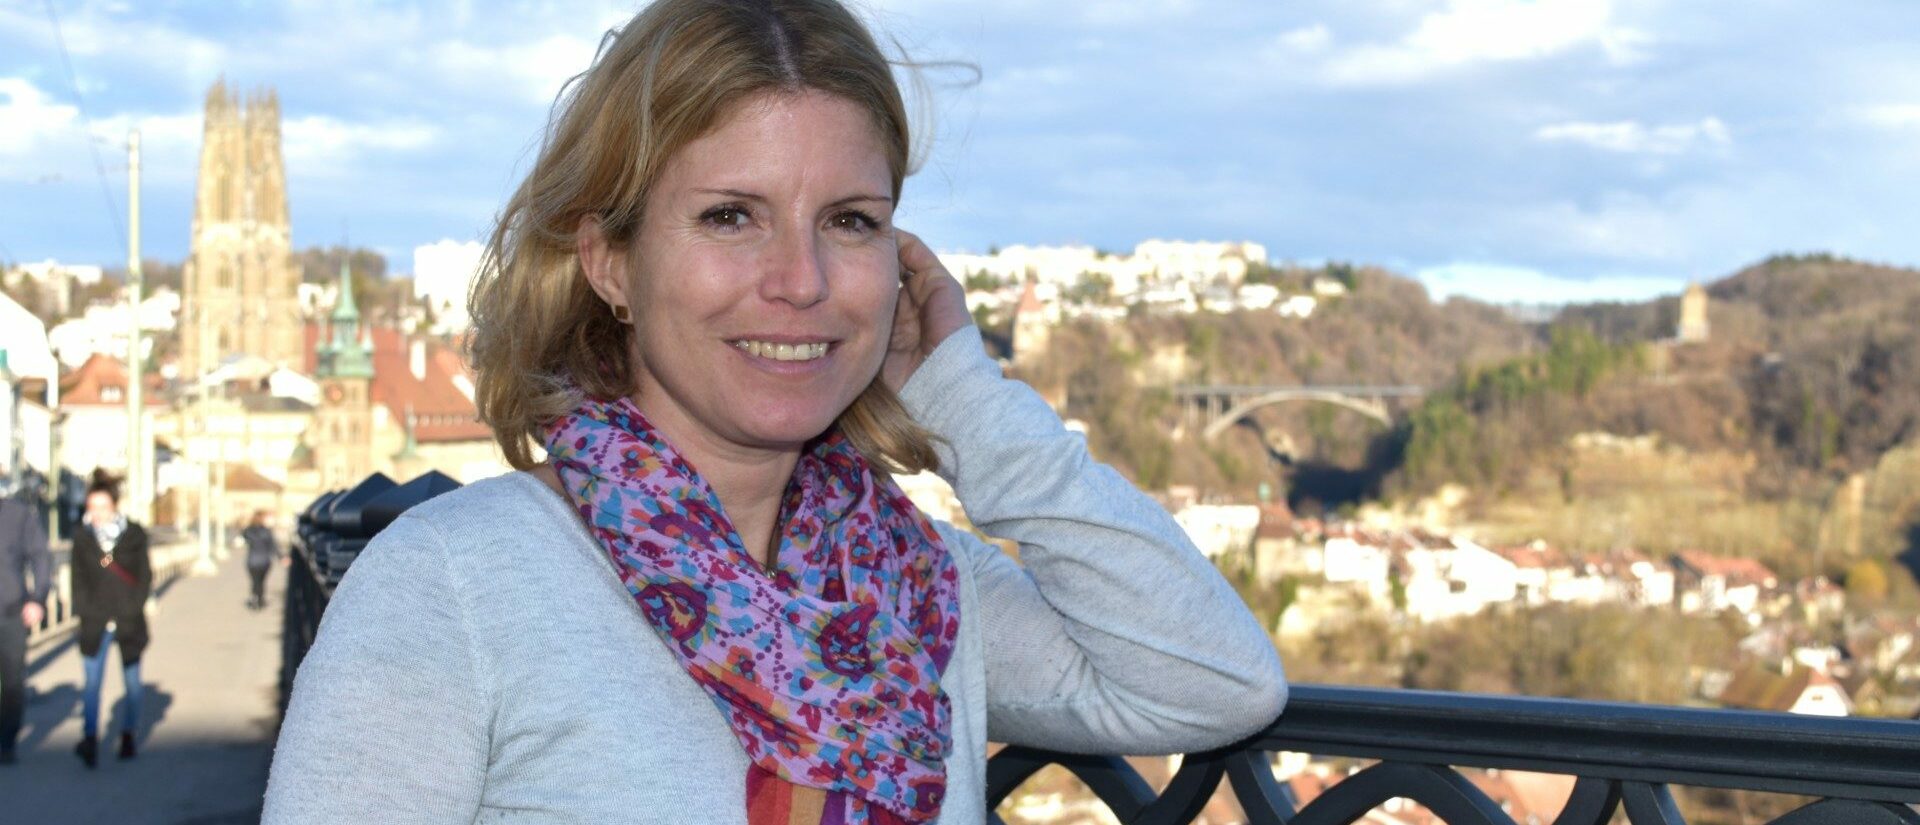 Dorothée Thévenaz Gygax è la prima “rappresentante per l'ecologia” della diocesi di Losanna, Friburgo e Ginevra